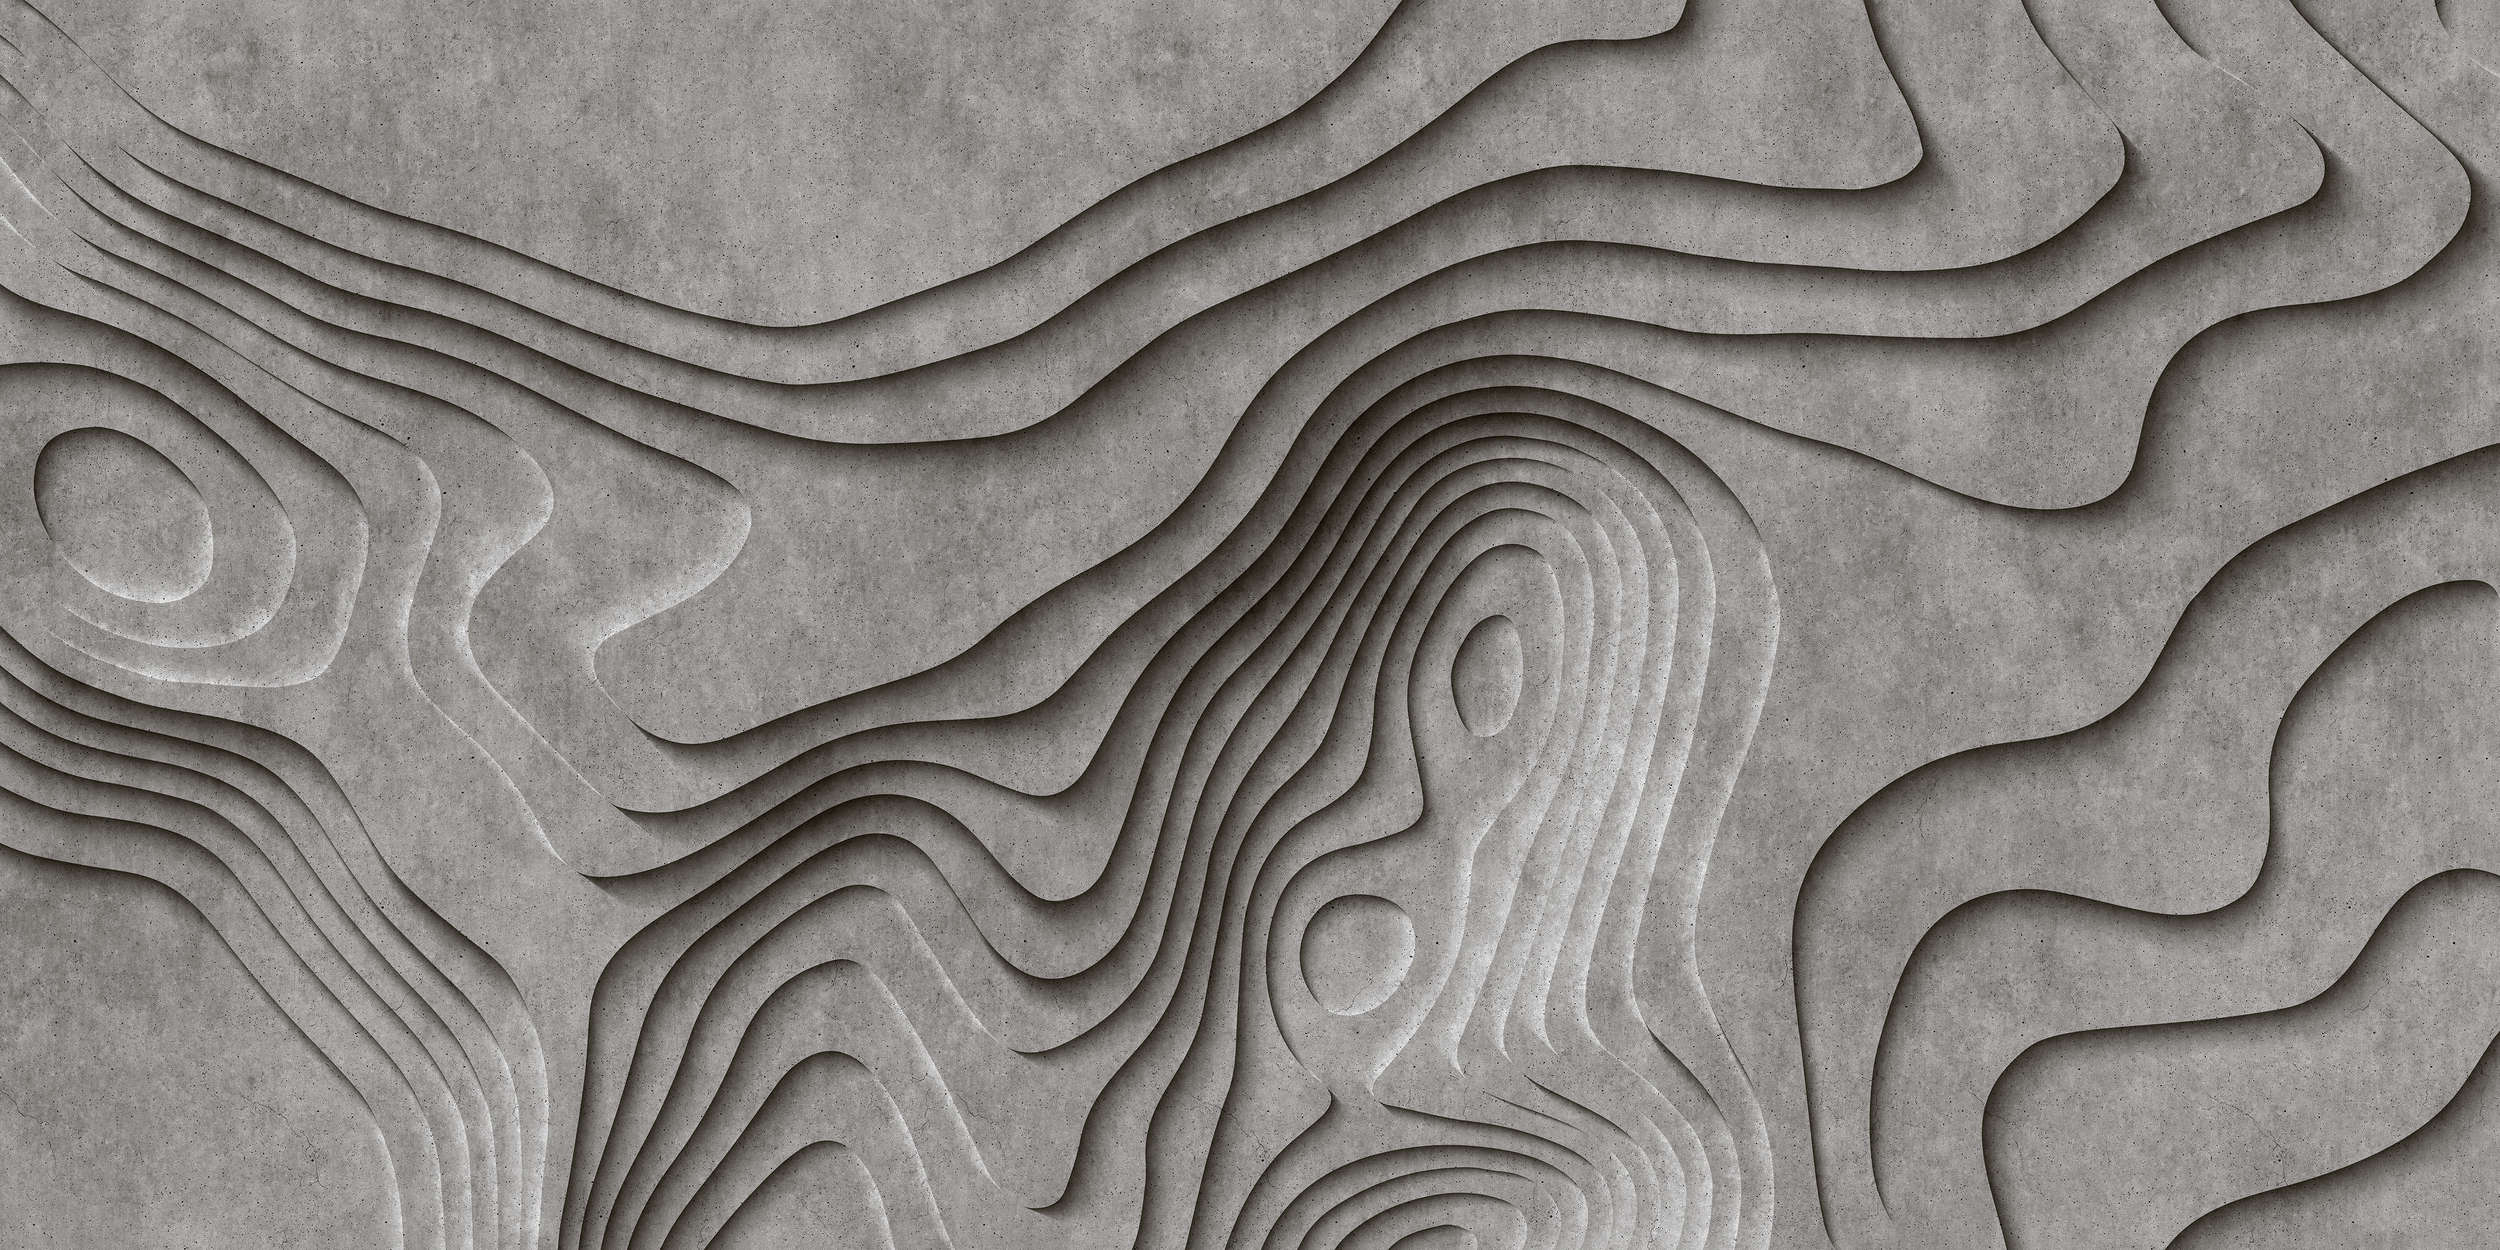             Canyon 1 - Coole 3D Beton-Canyon Fototapete – Grau, Schwarz | Perlmutt Glattvlies
        